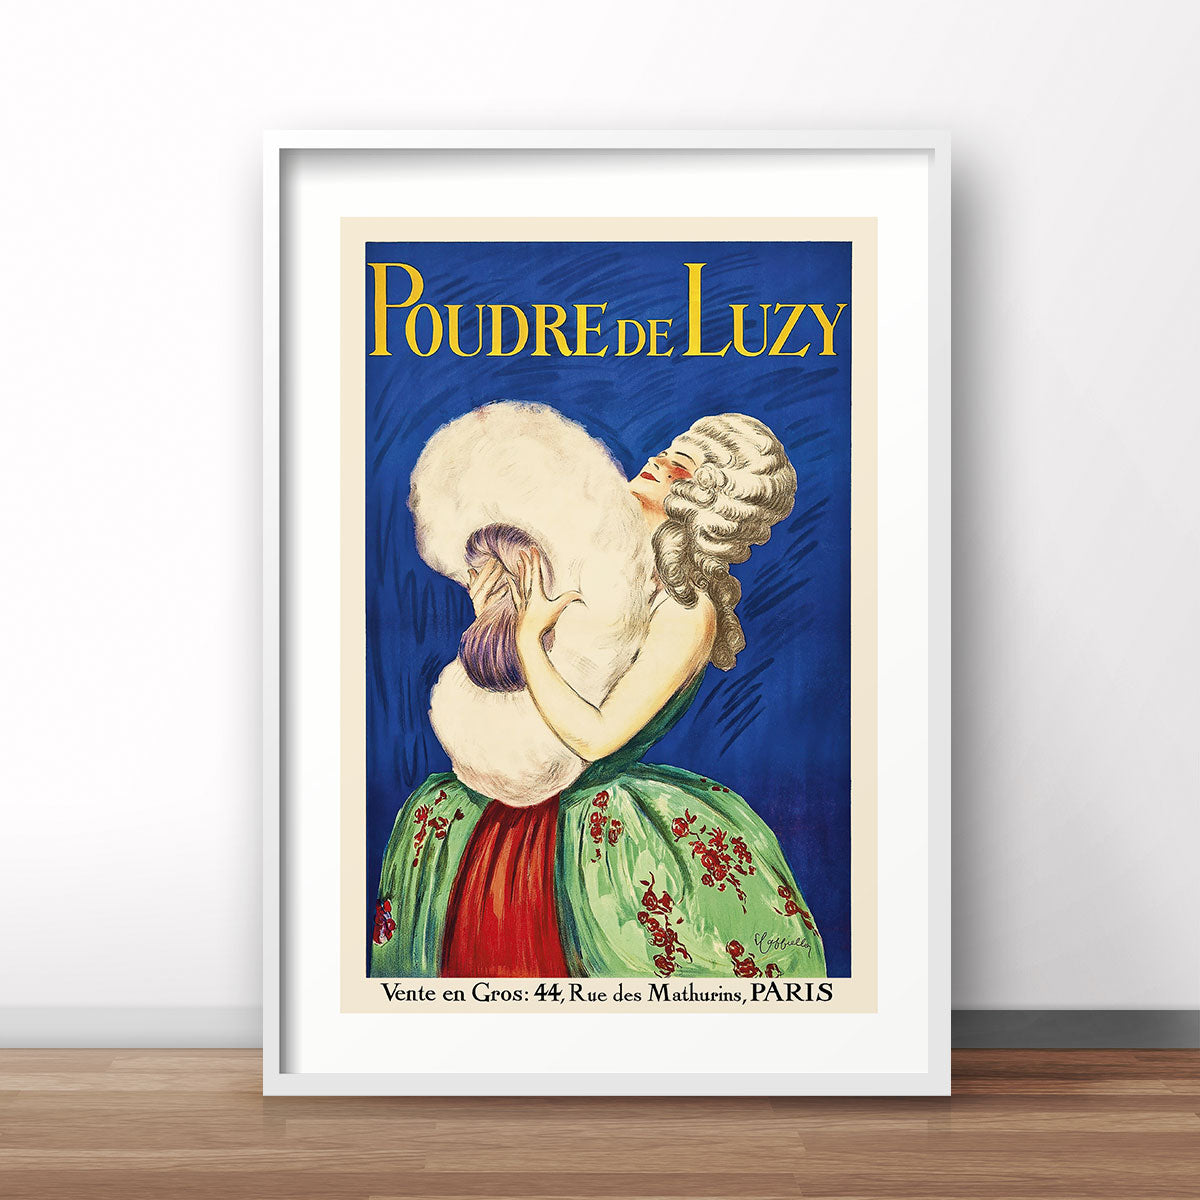 Poudre de Luzy paris vintage retro poster print from Places We Luv